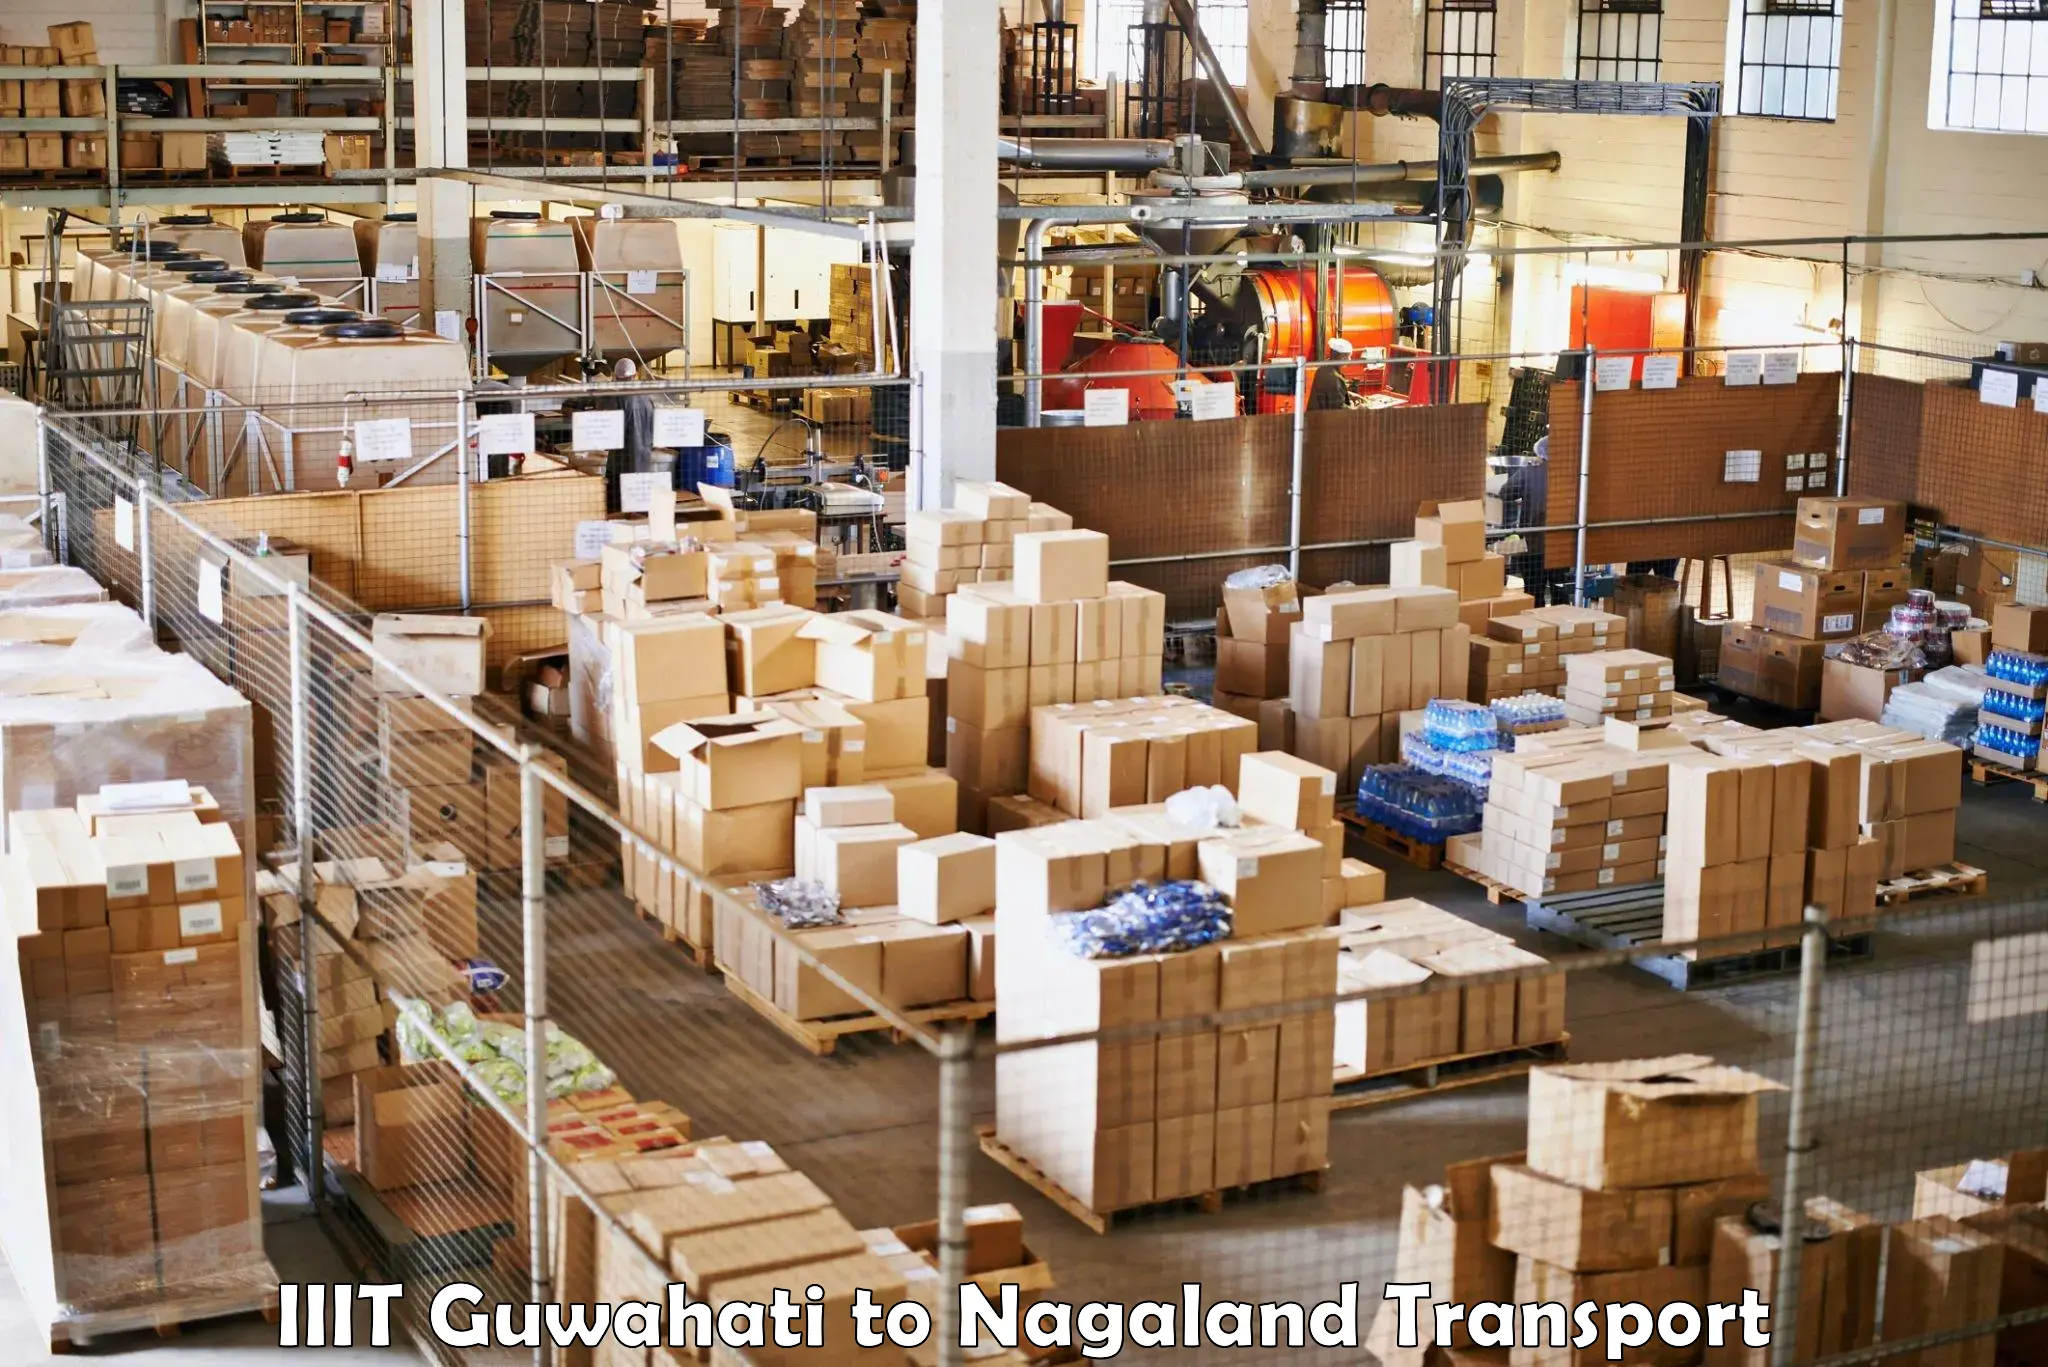 Transport in sharing IIIT Guwahati to NIT Nagaland